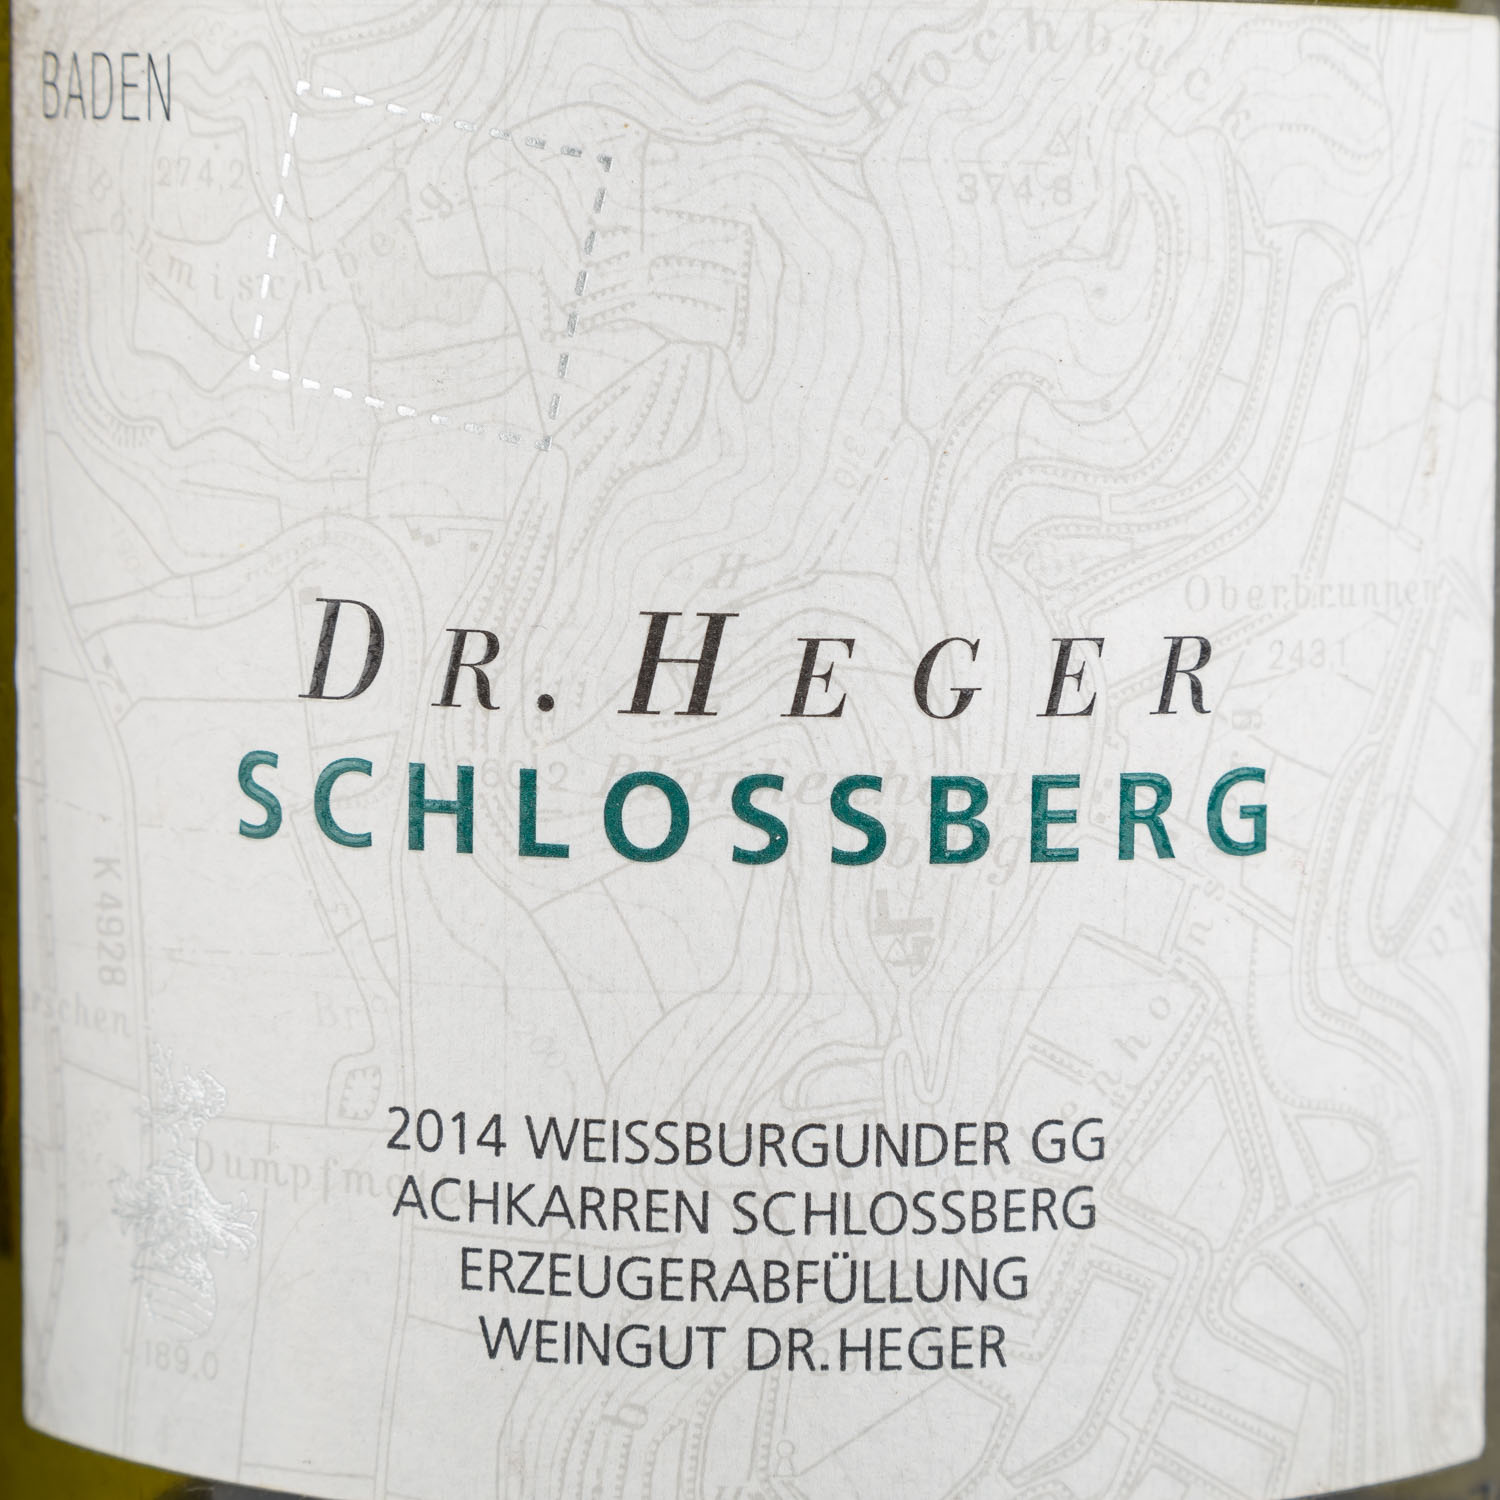 DR. HEGER 'Schlossberg' 2 Magnumflaschen ACHKARRER SCHLOSSBERG, 2012/2014 - Image 5 of 5